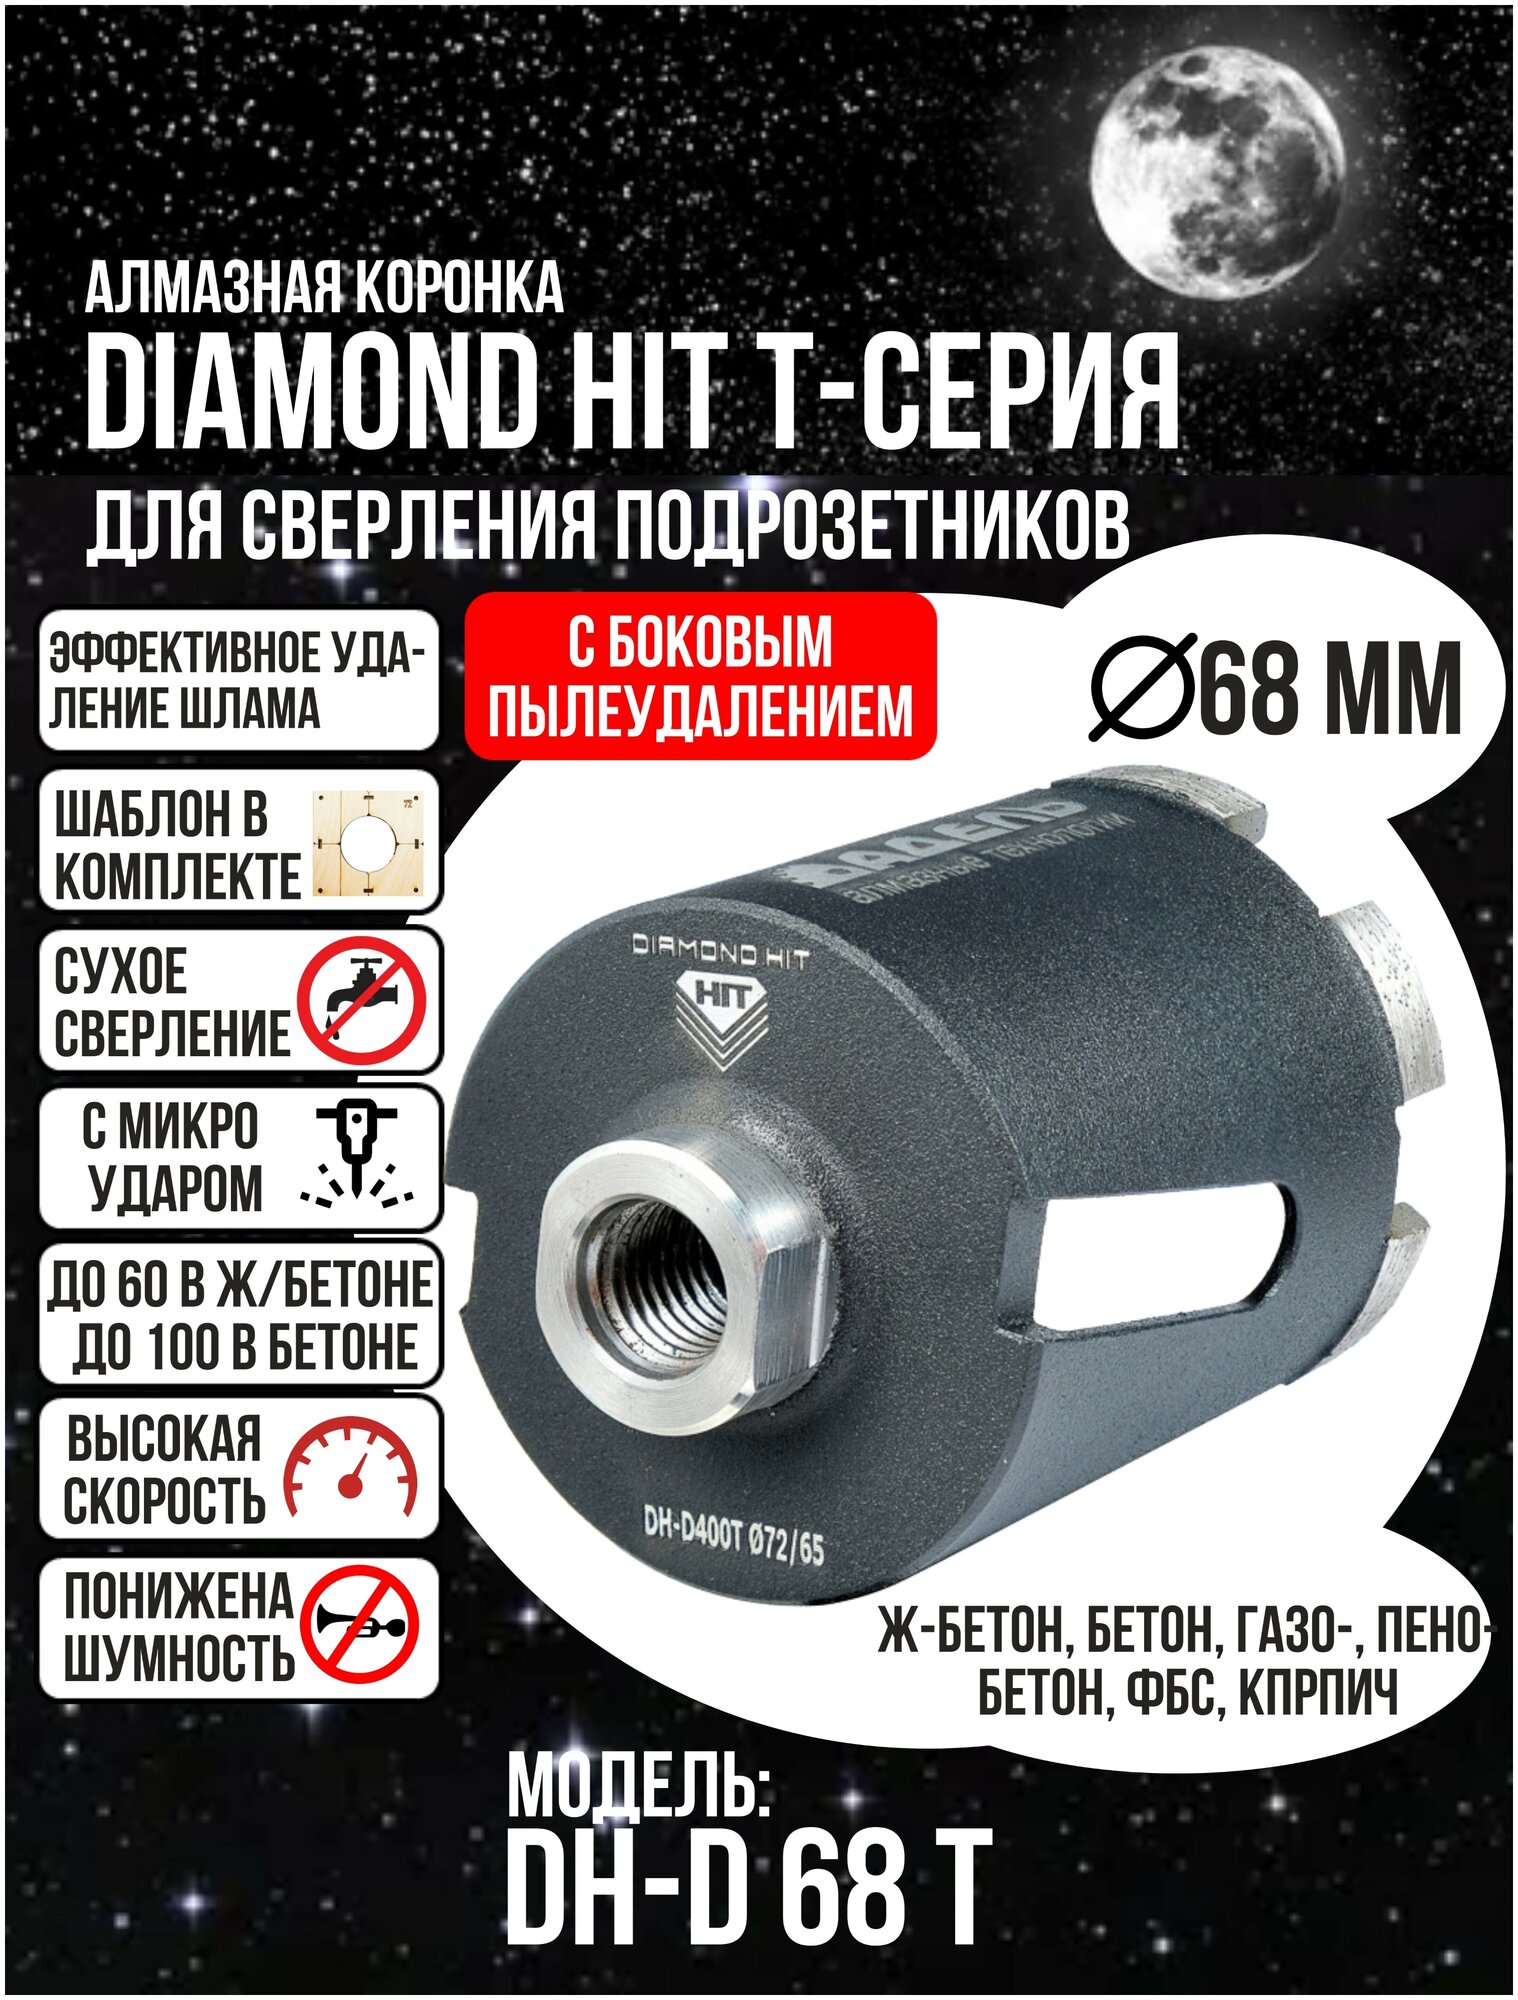 Алмазная коронка по бетону и кирпичу 68 мм DIAMOND HIT Т-серия для сверления подрозетников боковое пылеудаление, хвостовик М16, сухой рез + Шаблон